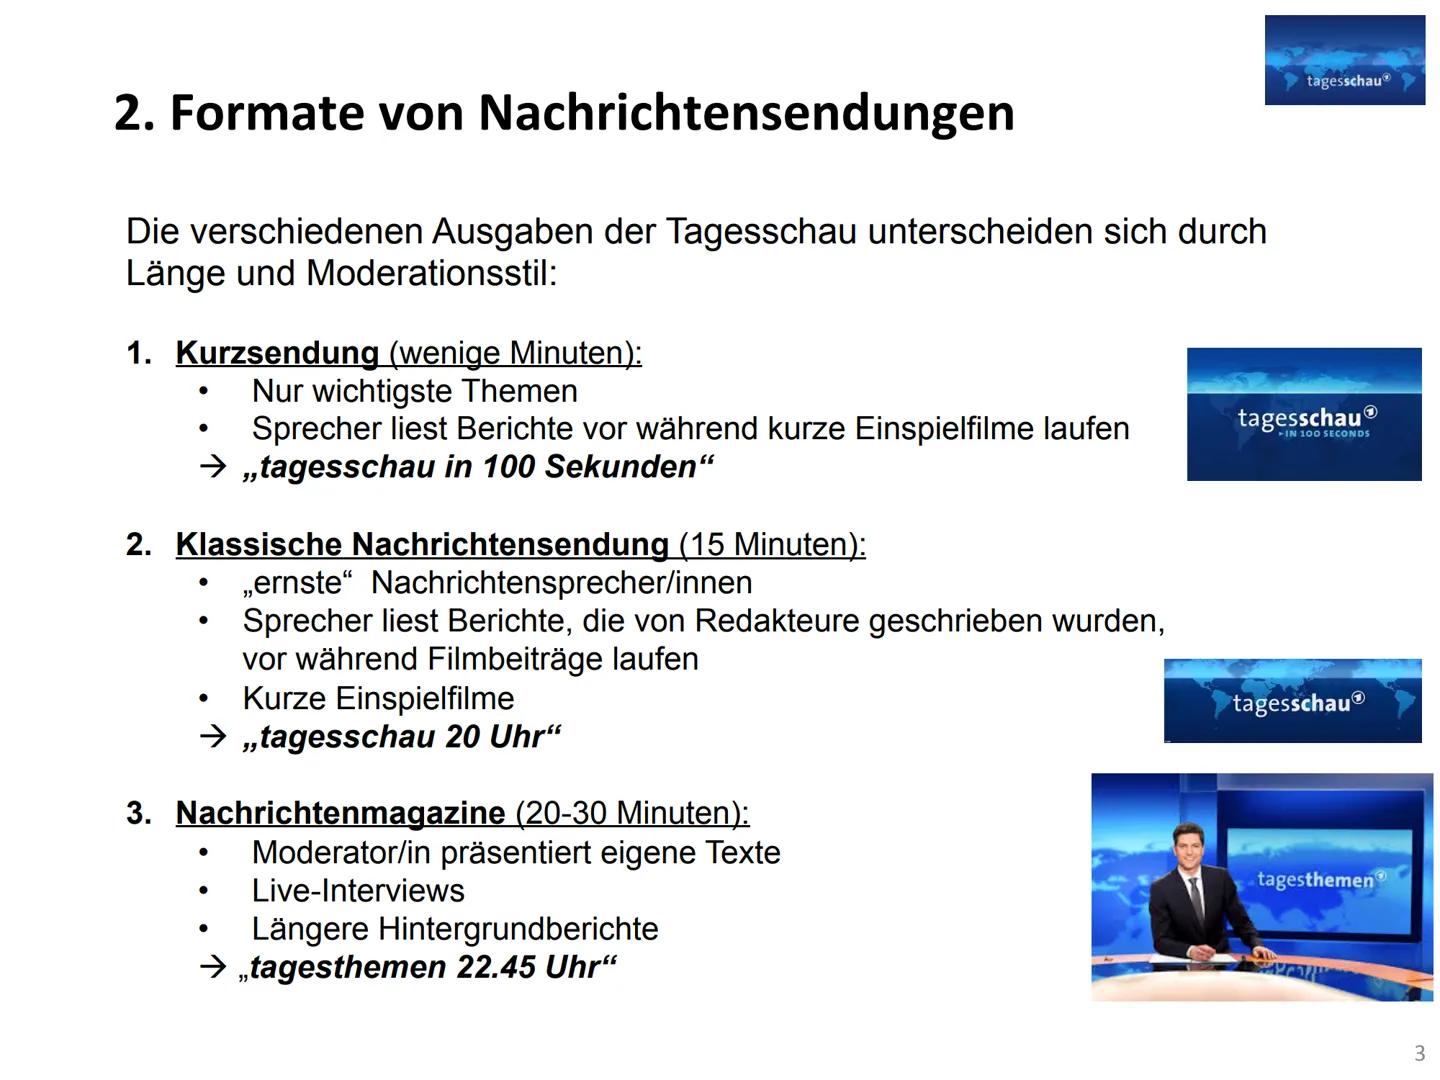 Vorstellung einer Nachrichtensendung im TV
Gliederung:
1. Geschichte der Tagesschau..
2. Formate von Nachrichtensendungen...
3. Wodurch zeic